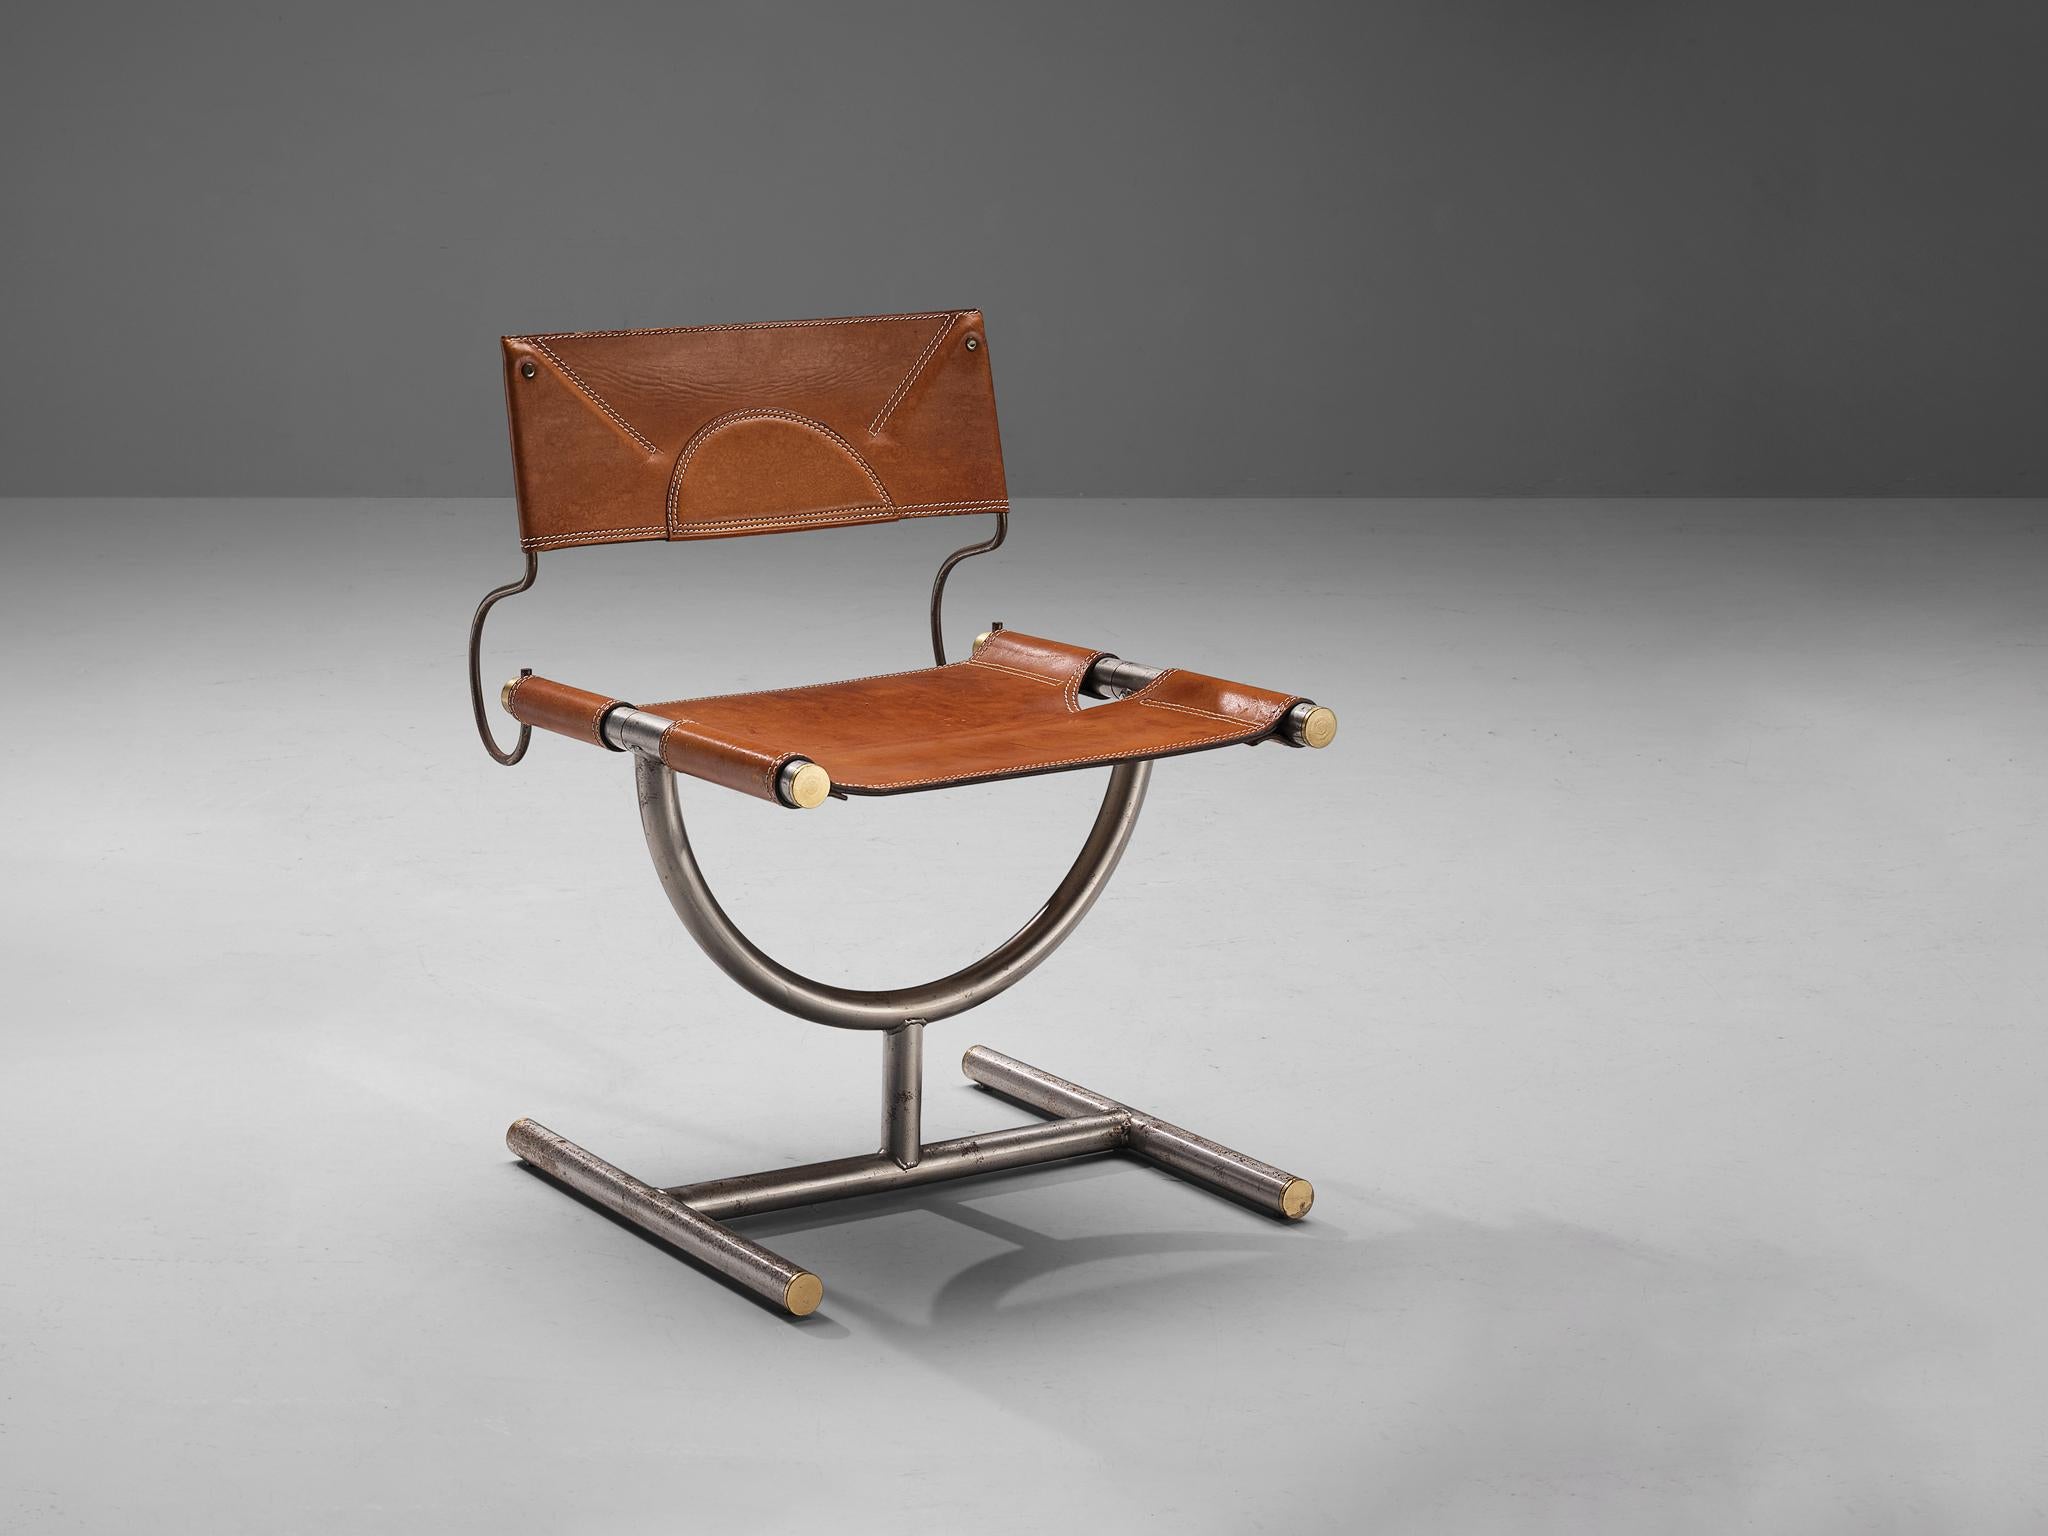 Afra & Tobia Scarpa pour Benetton Office, chaise, laiton, cuir, acier, Italie, 1985.

Cette chaise a été conçue pour le bureau de la marque de vêtements Benetton par Afra & Tobia Scarpa. Cette chaise est exécutée en cuir cognac d'origine et en acier